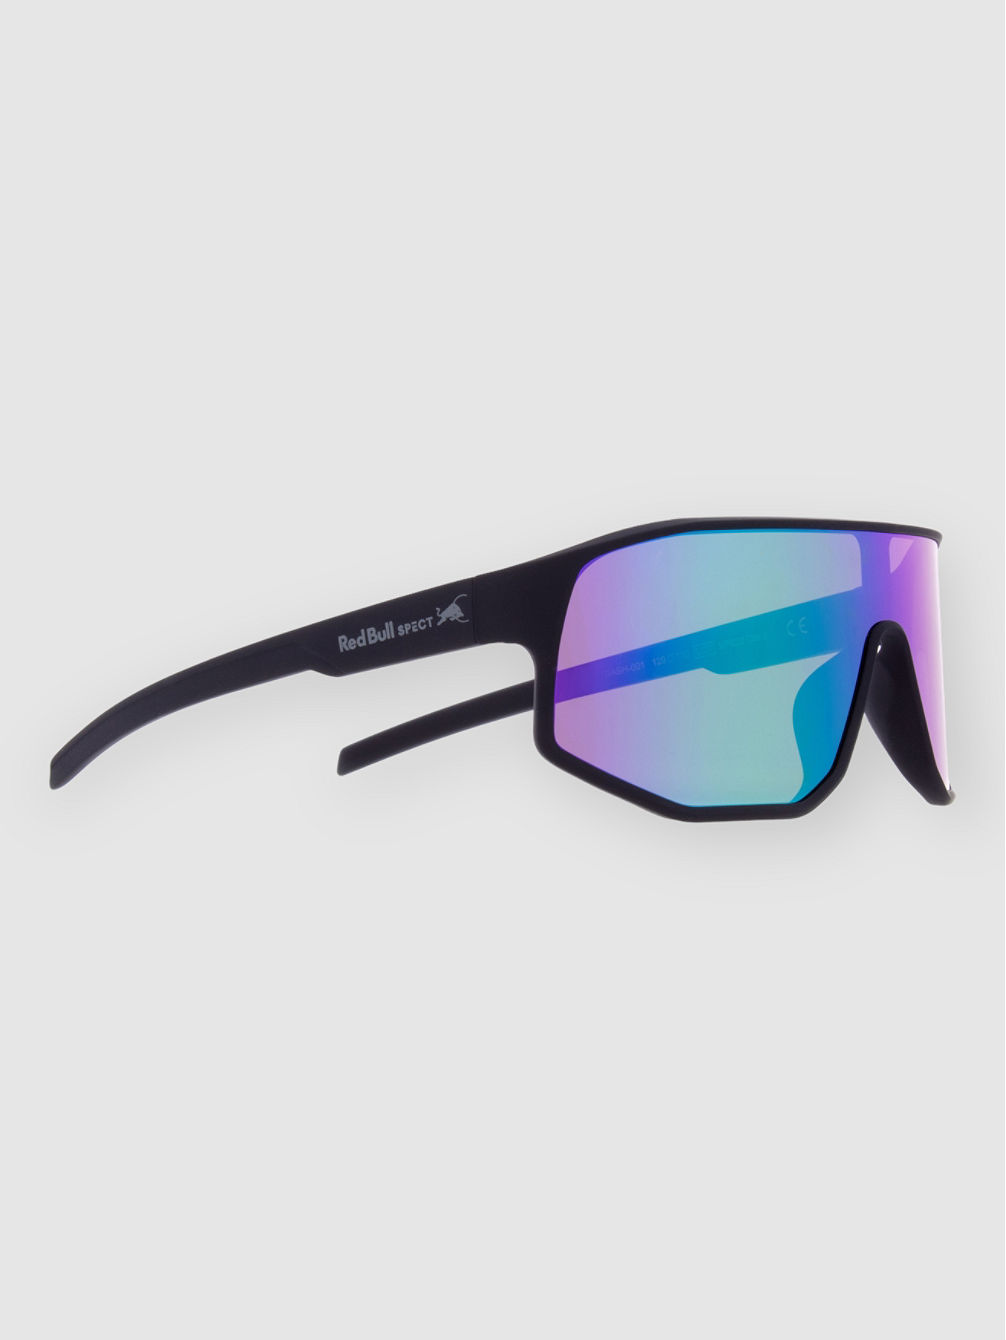 DASH-001 Black Sunglasses